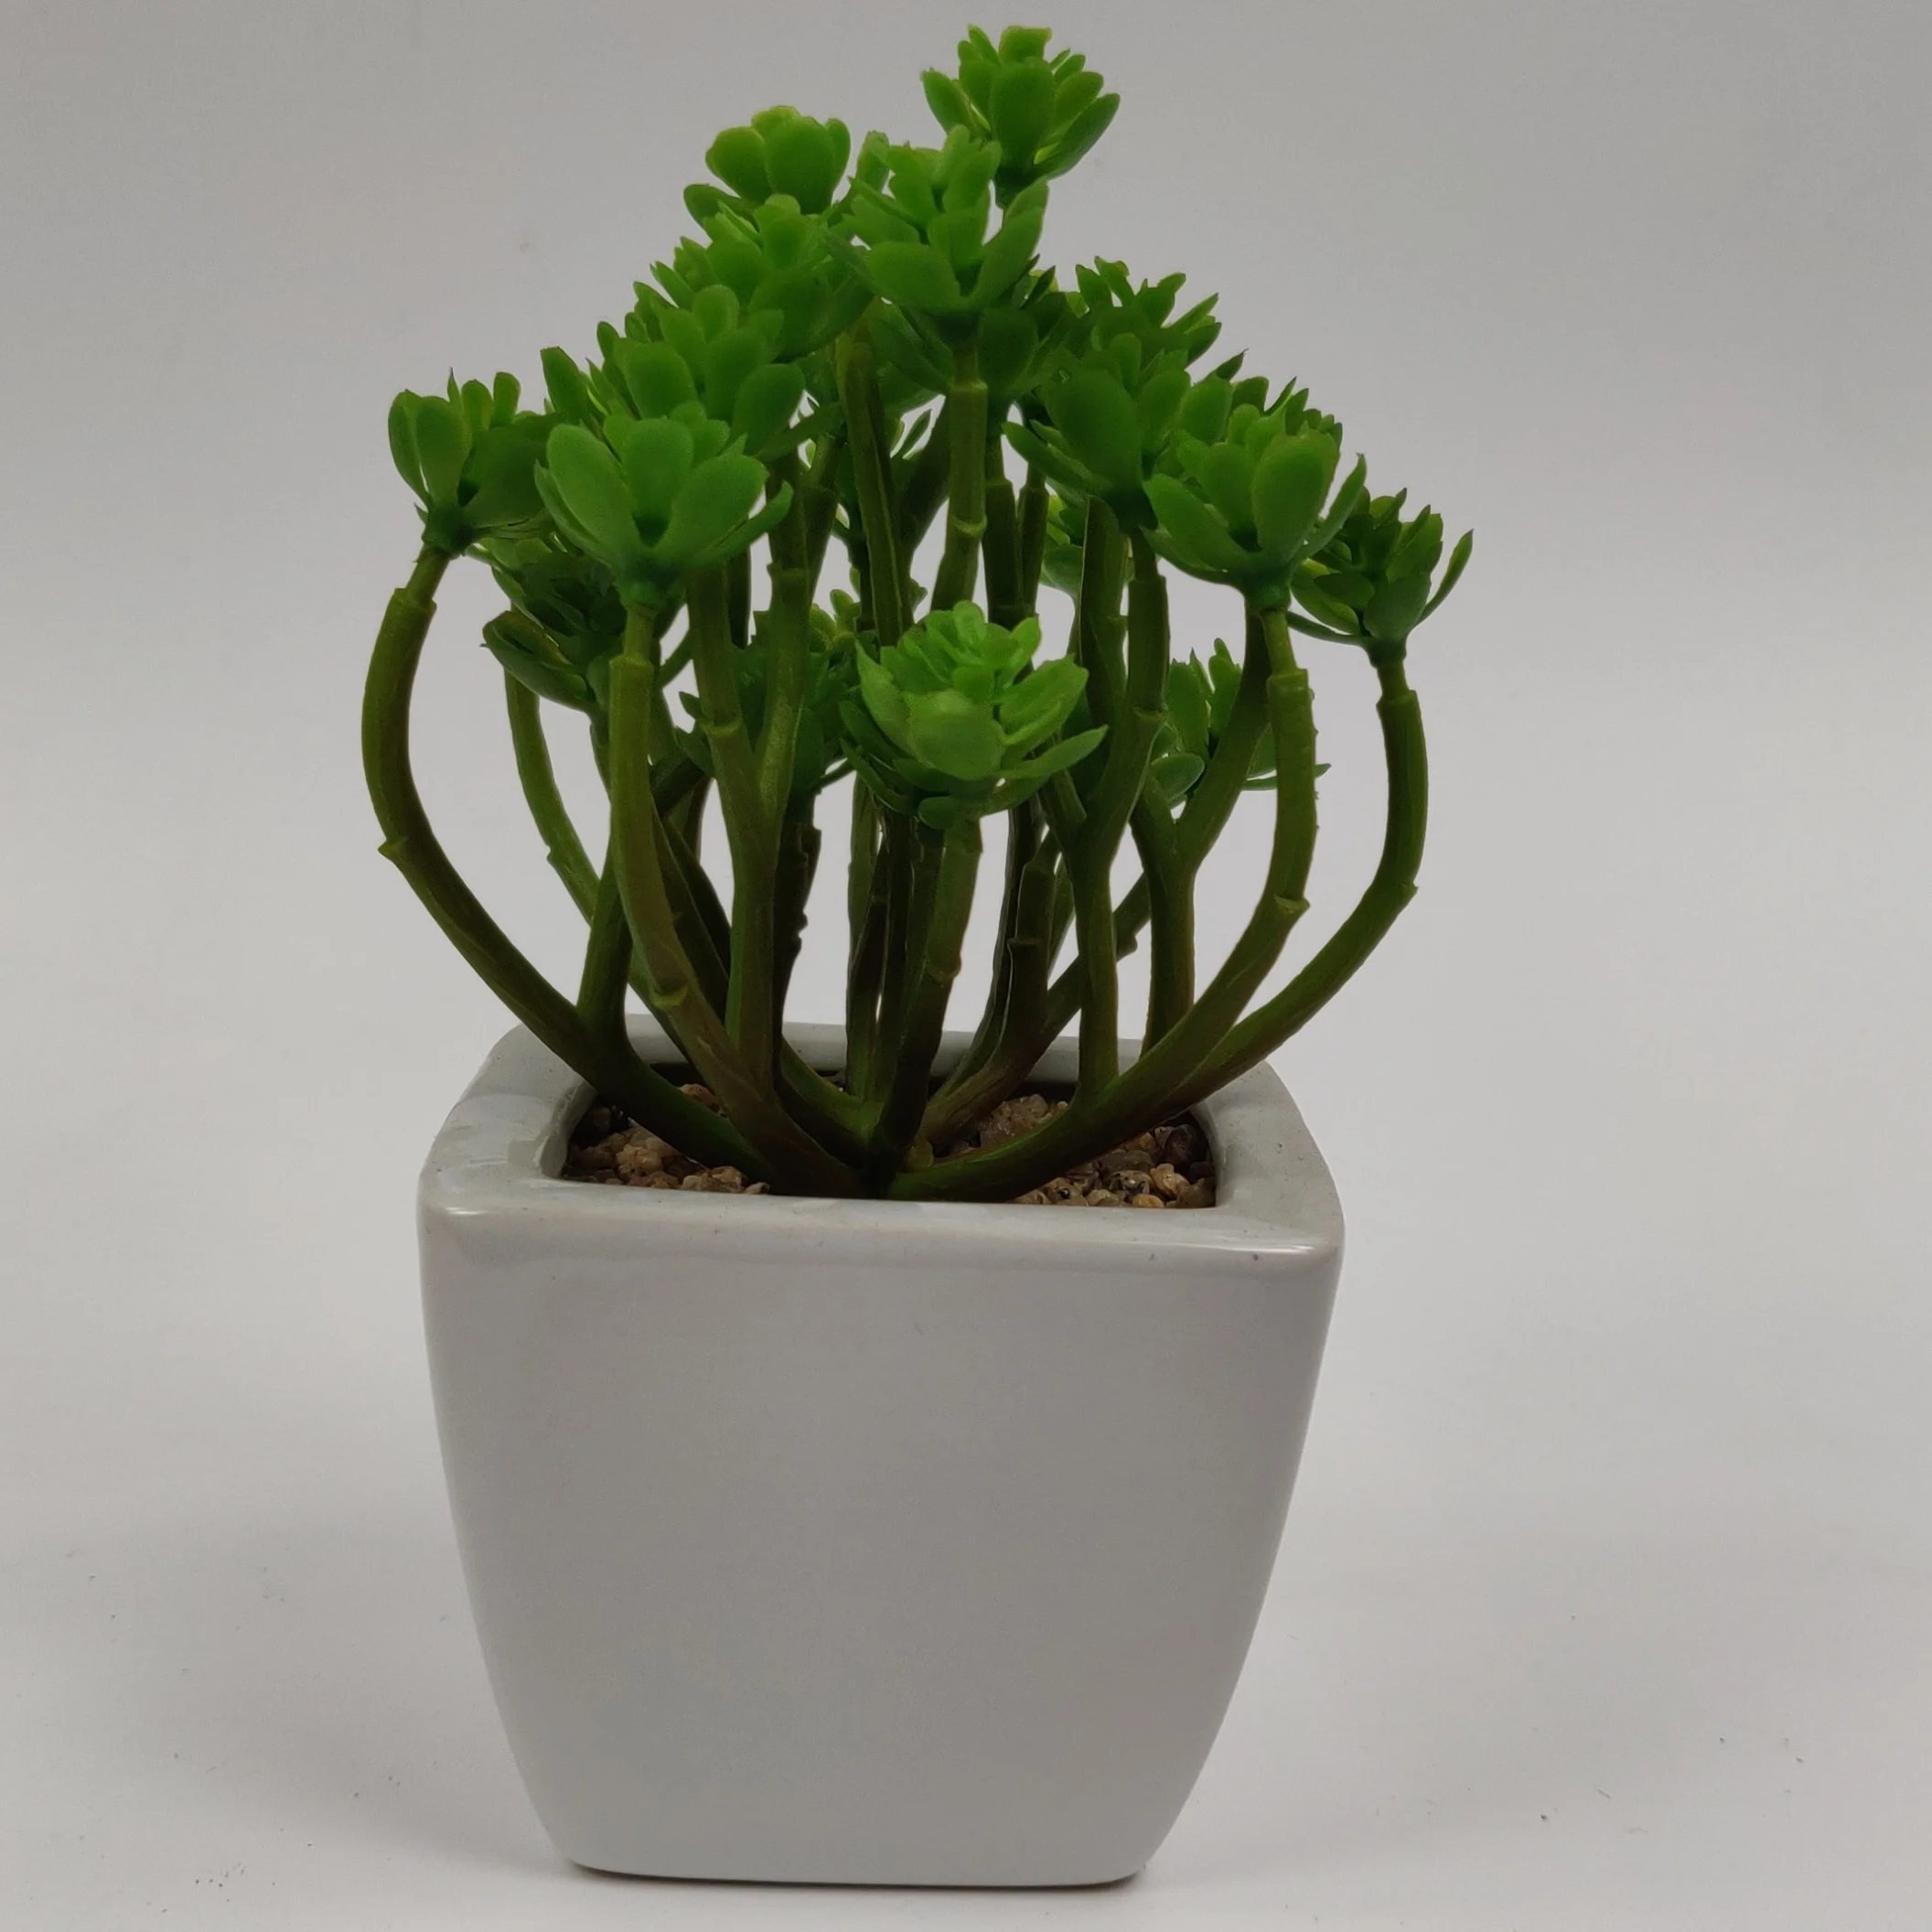 

Mini Office Decoration Desktop Green Faux Artificial Plants Succulents In Ceramic Pot, As shown